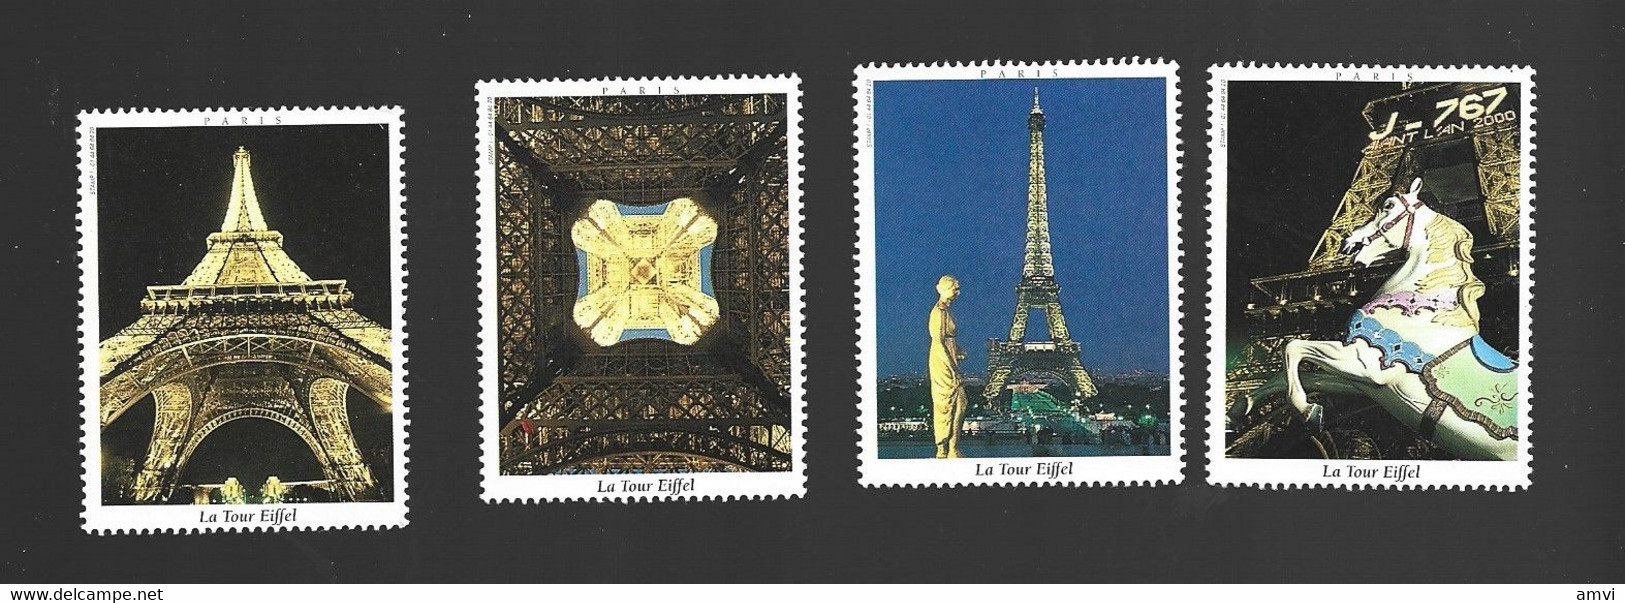 22- 5 - 1240 4 Vignette La Tour Eiffel - Tourism (Labels)